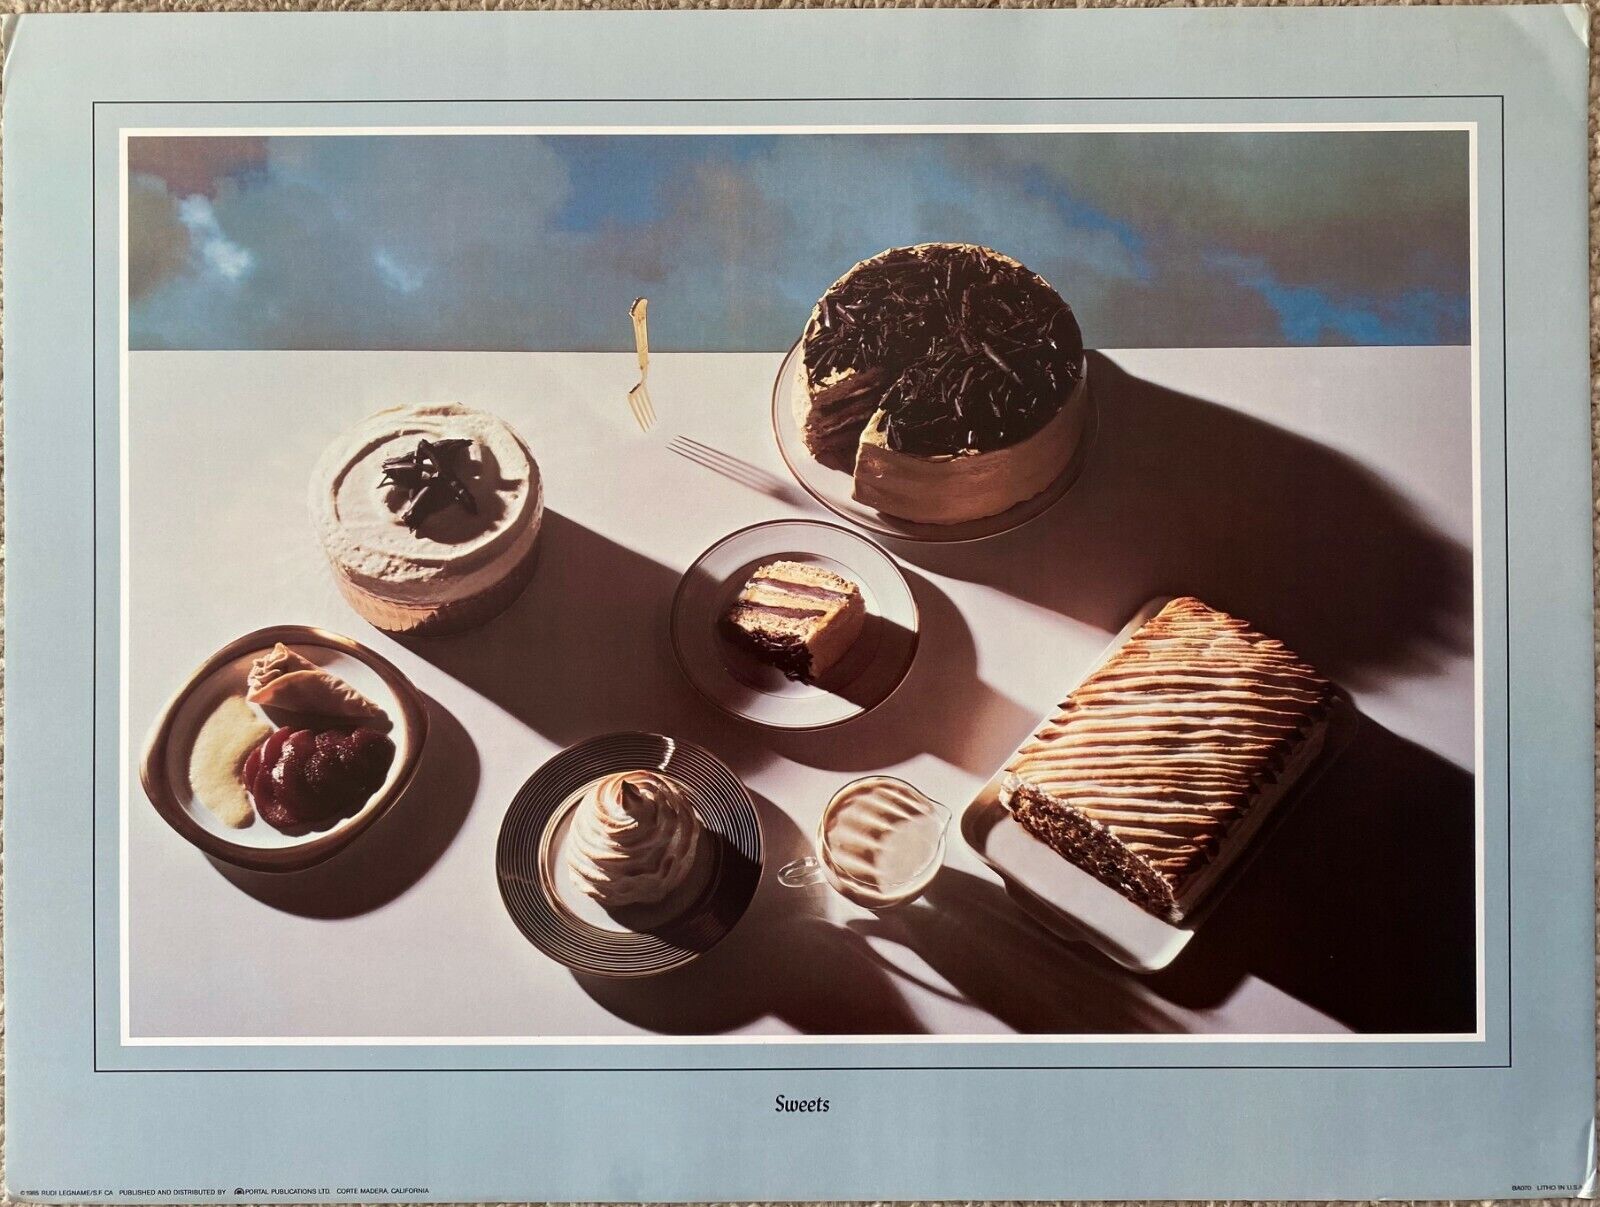 Sweets by Rudi Legname